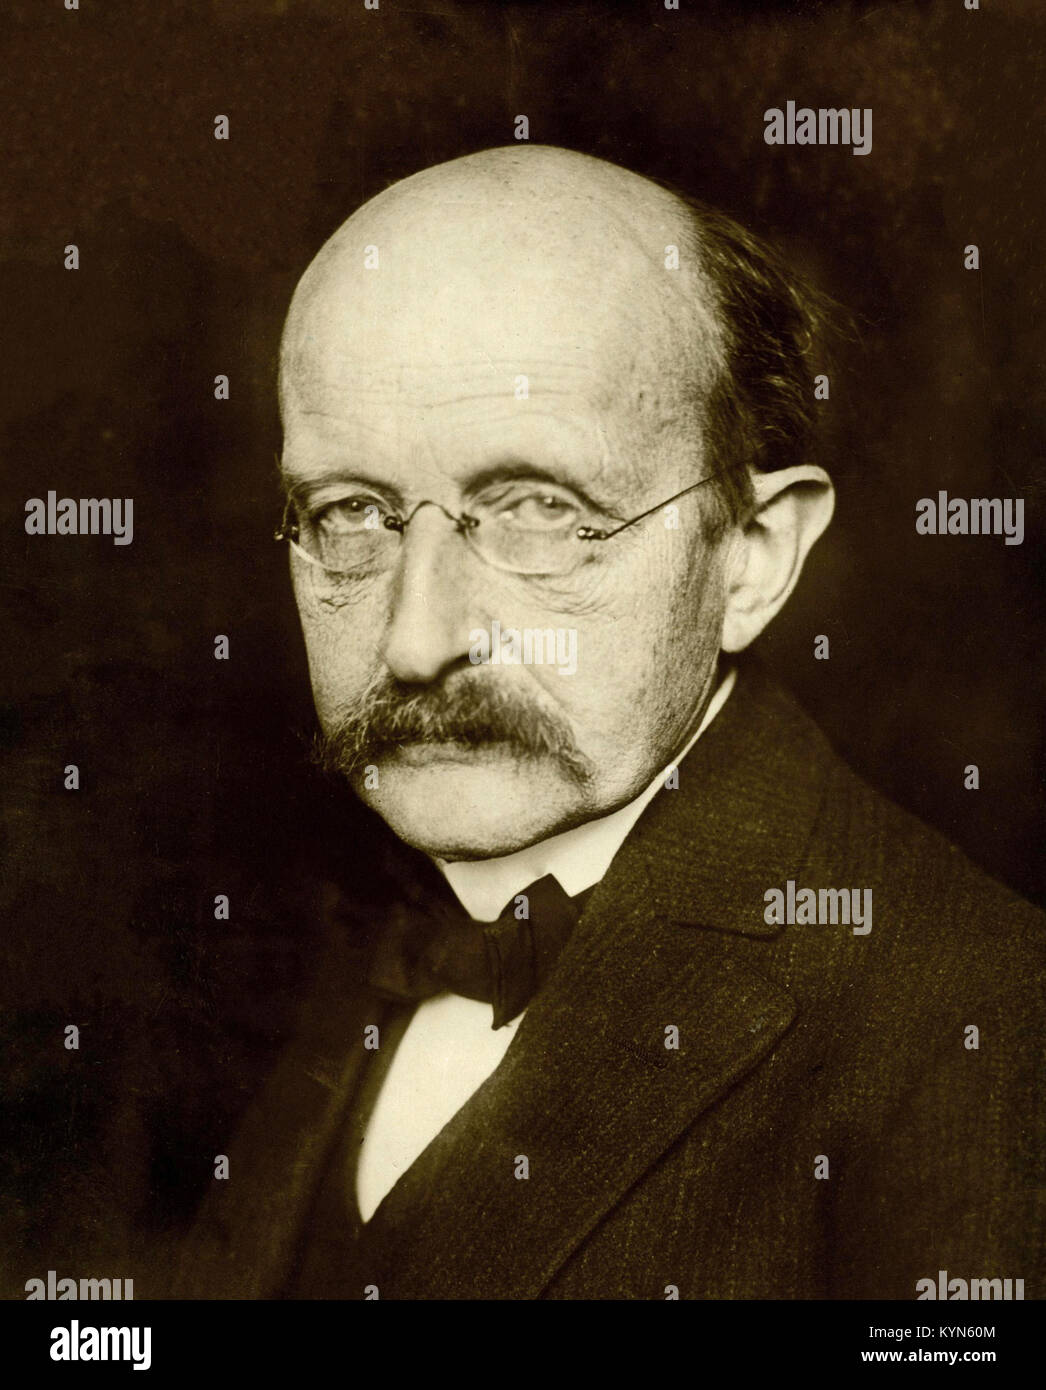 Max Karl Ernst Ludwig Planck, deutscher theoretischer Physiker, dessen Entdeckung von energiequanten gewann ihn der Nobelpreis für Physik 1918 Stockfoto